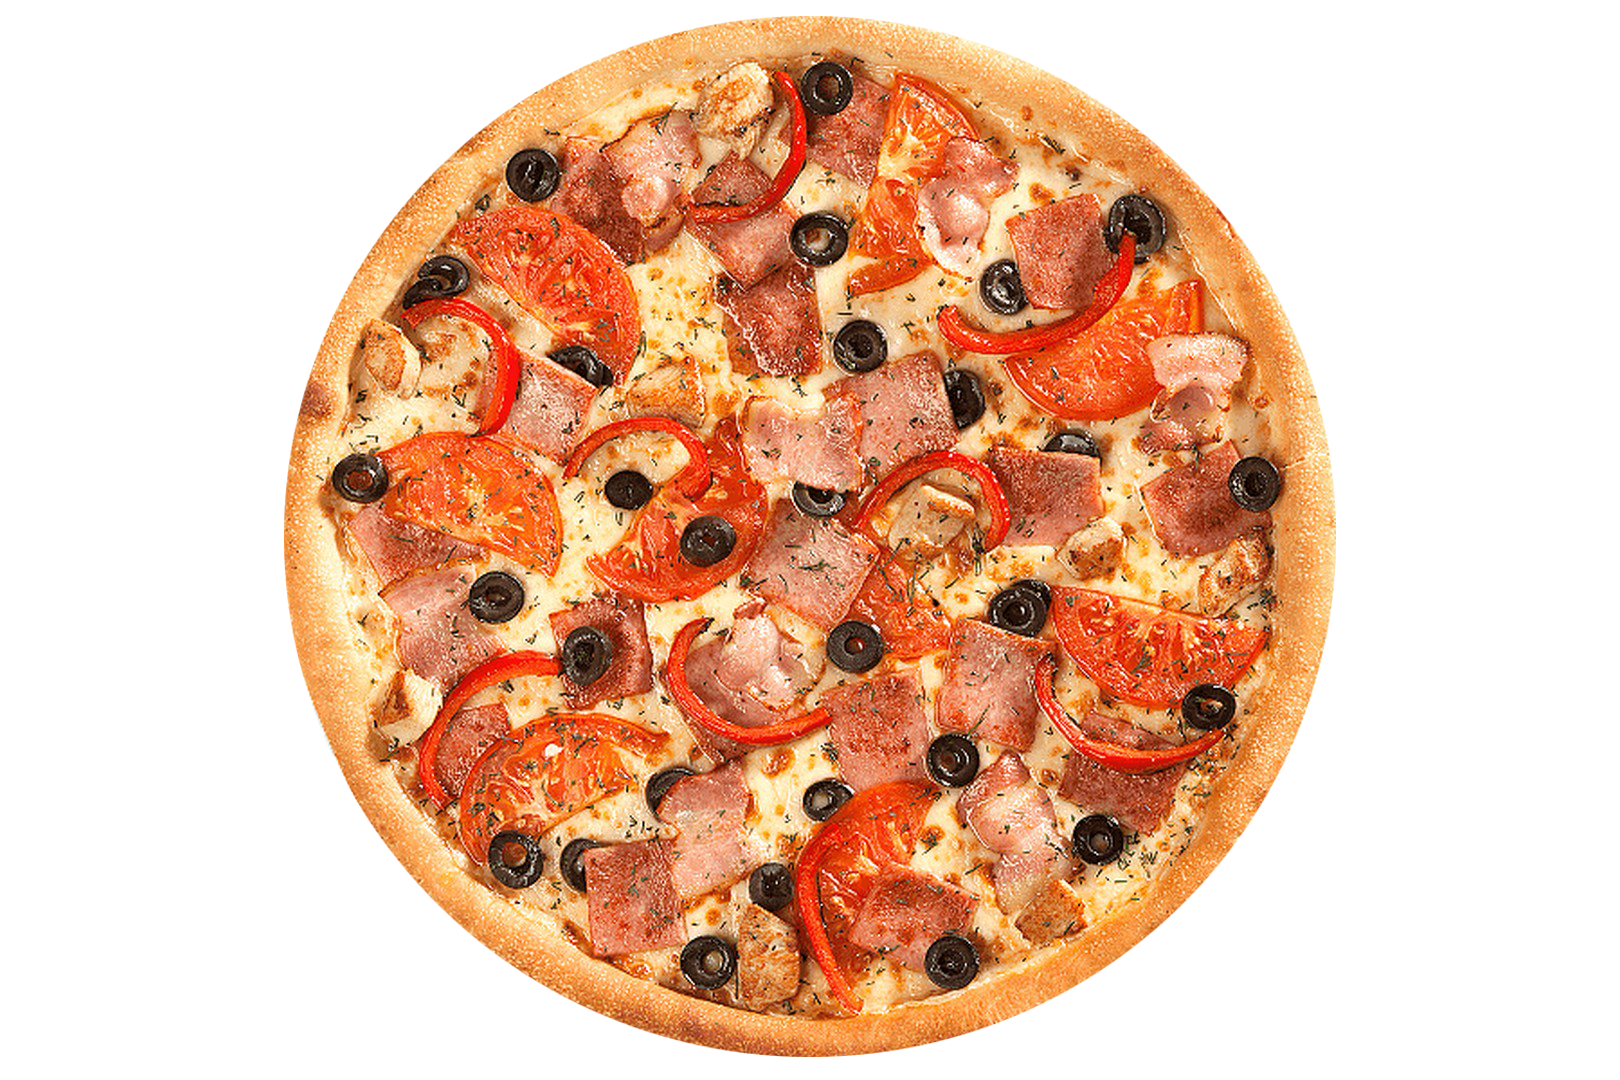 я хочу пиццу с перцем луком пепперони и оливками фото 77